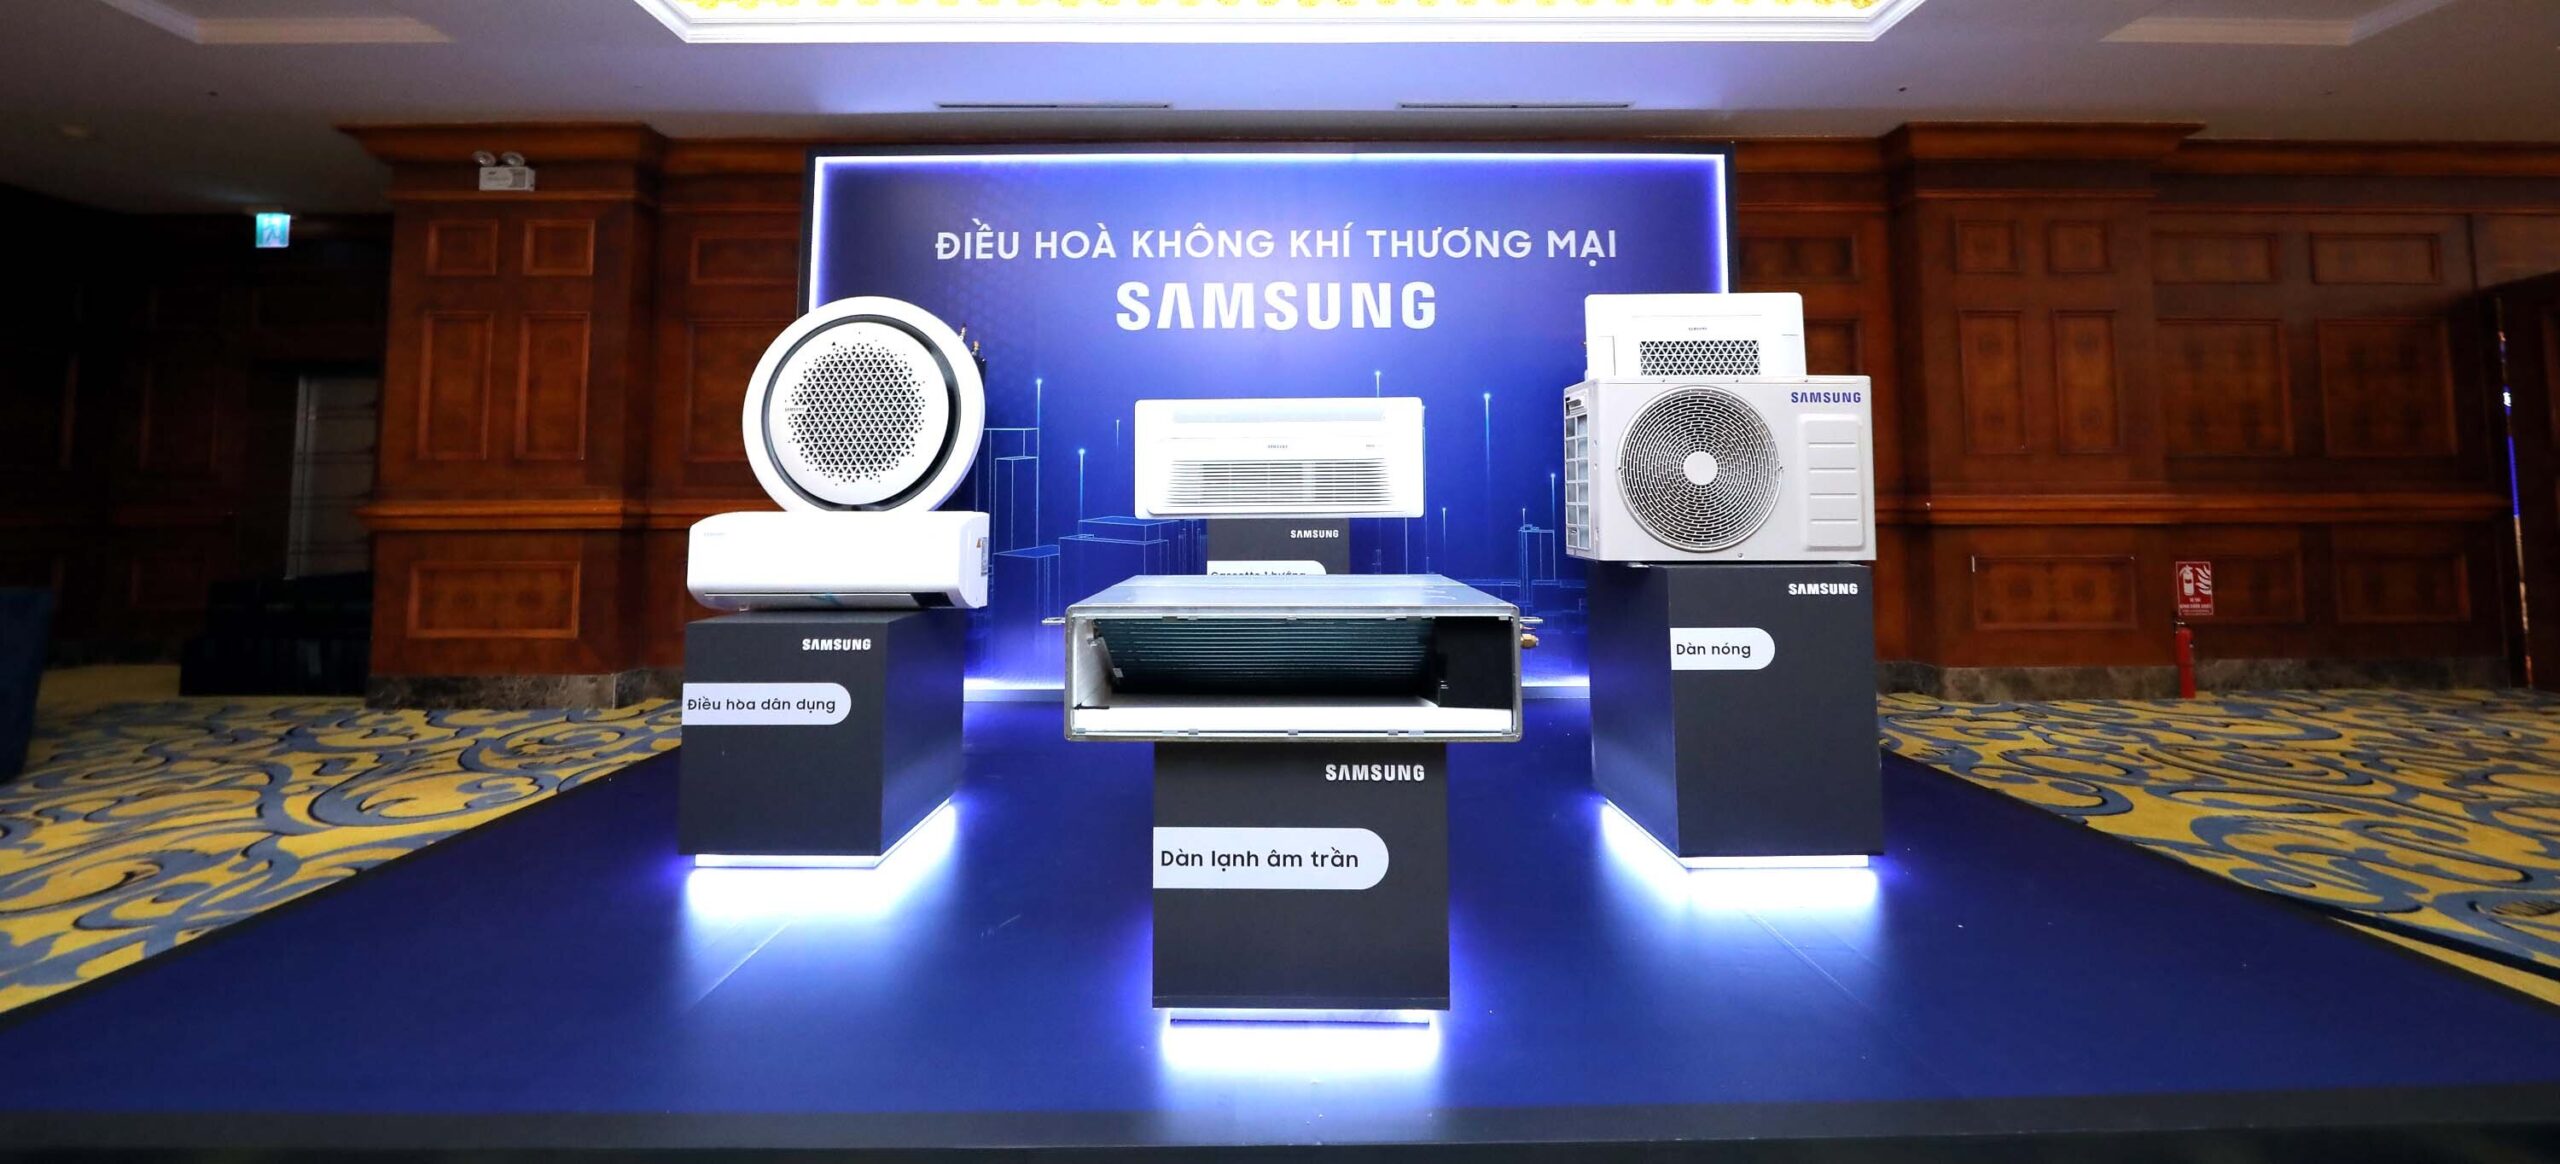 Hội nghị ra mắt sản phẩm điều hòa không khí của Samsung